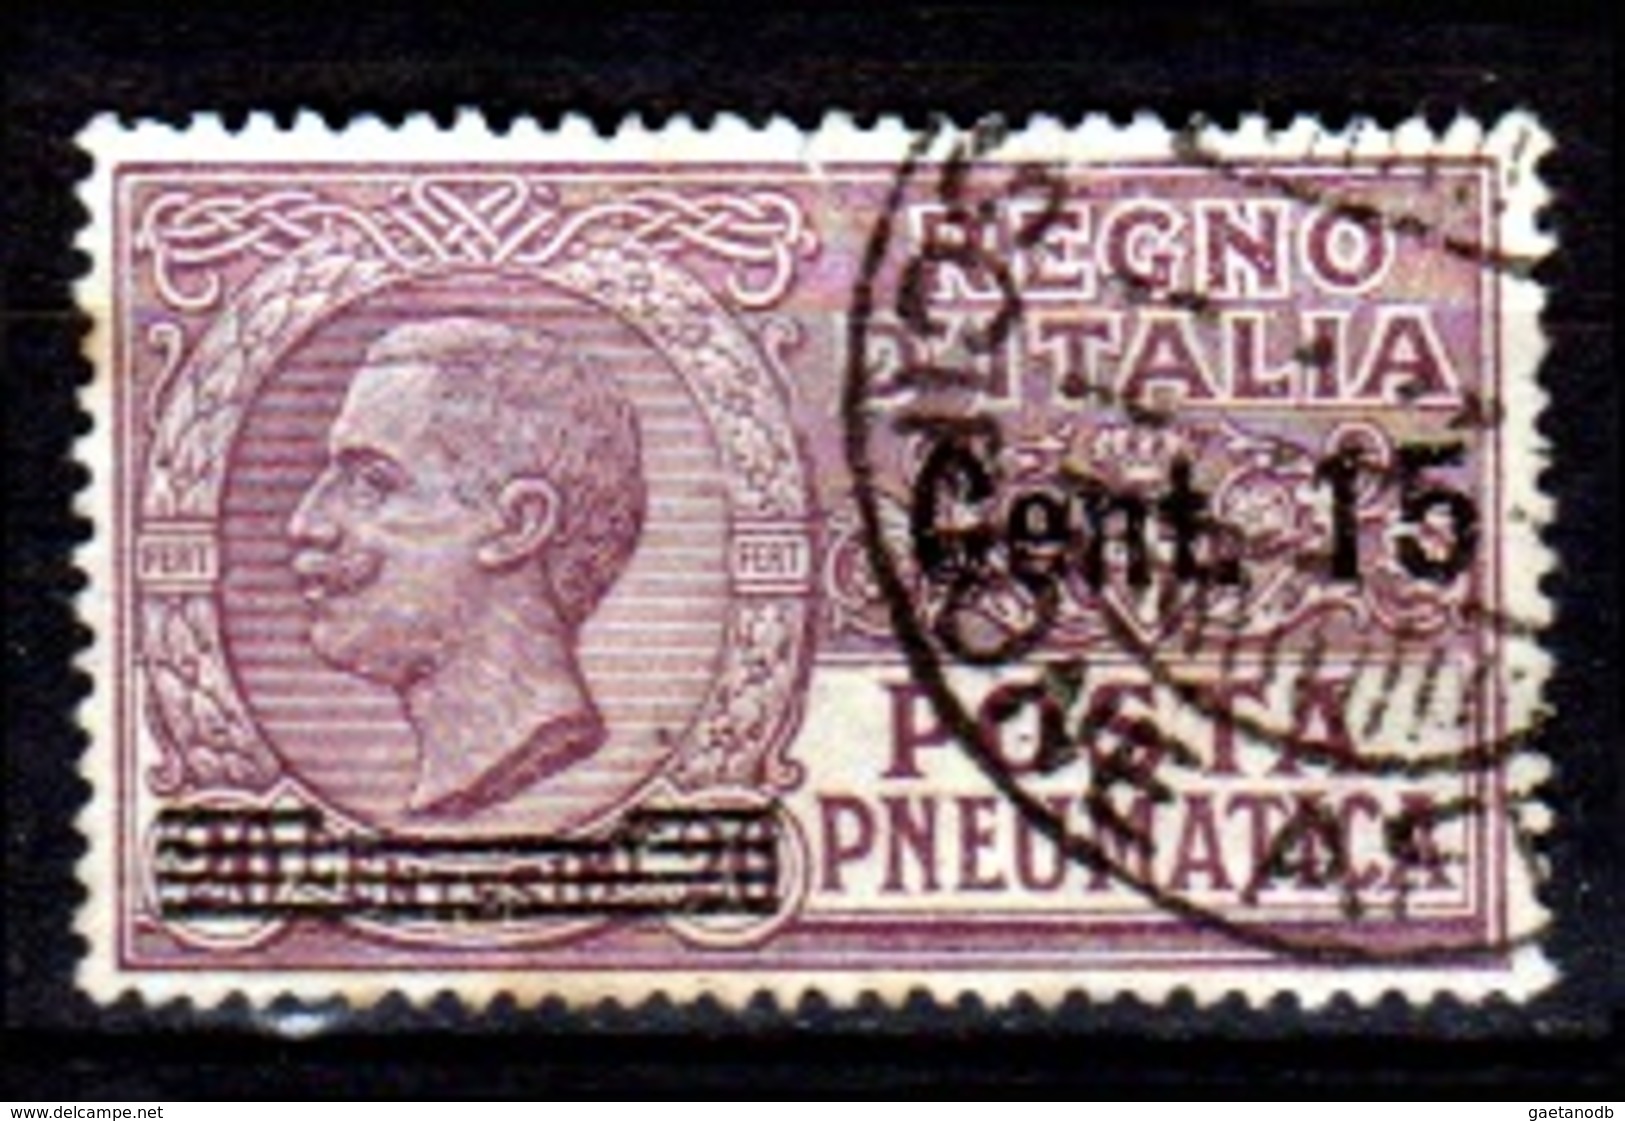 Italia-A-0552: POSTA PNEUMATICA 1927 (o) Used - Senza Difetti Occulti. - Rohrpost